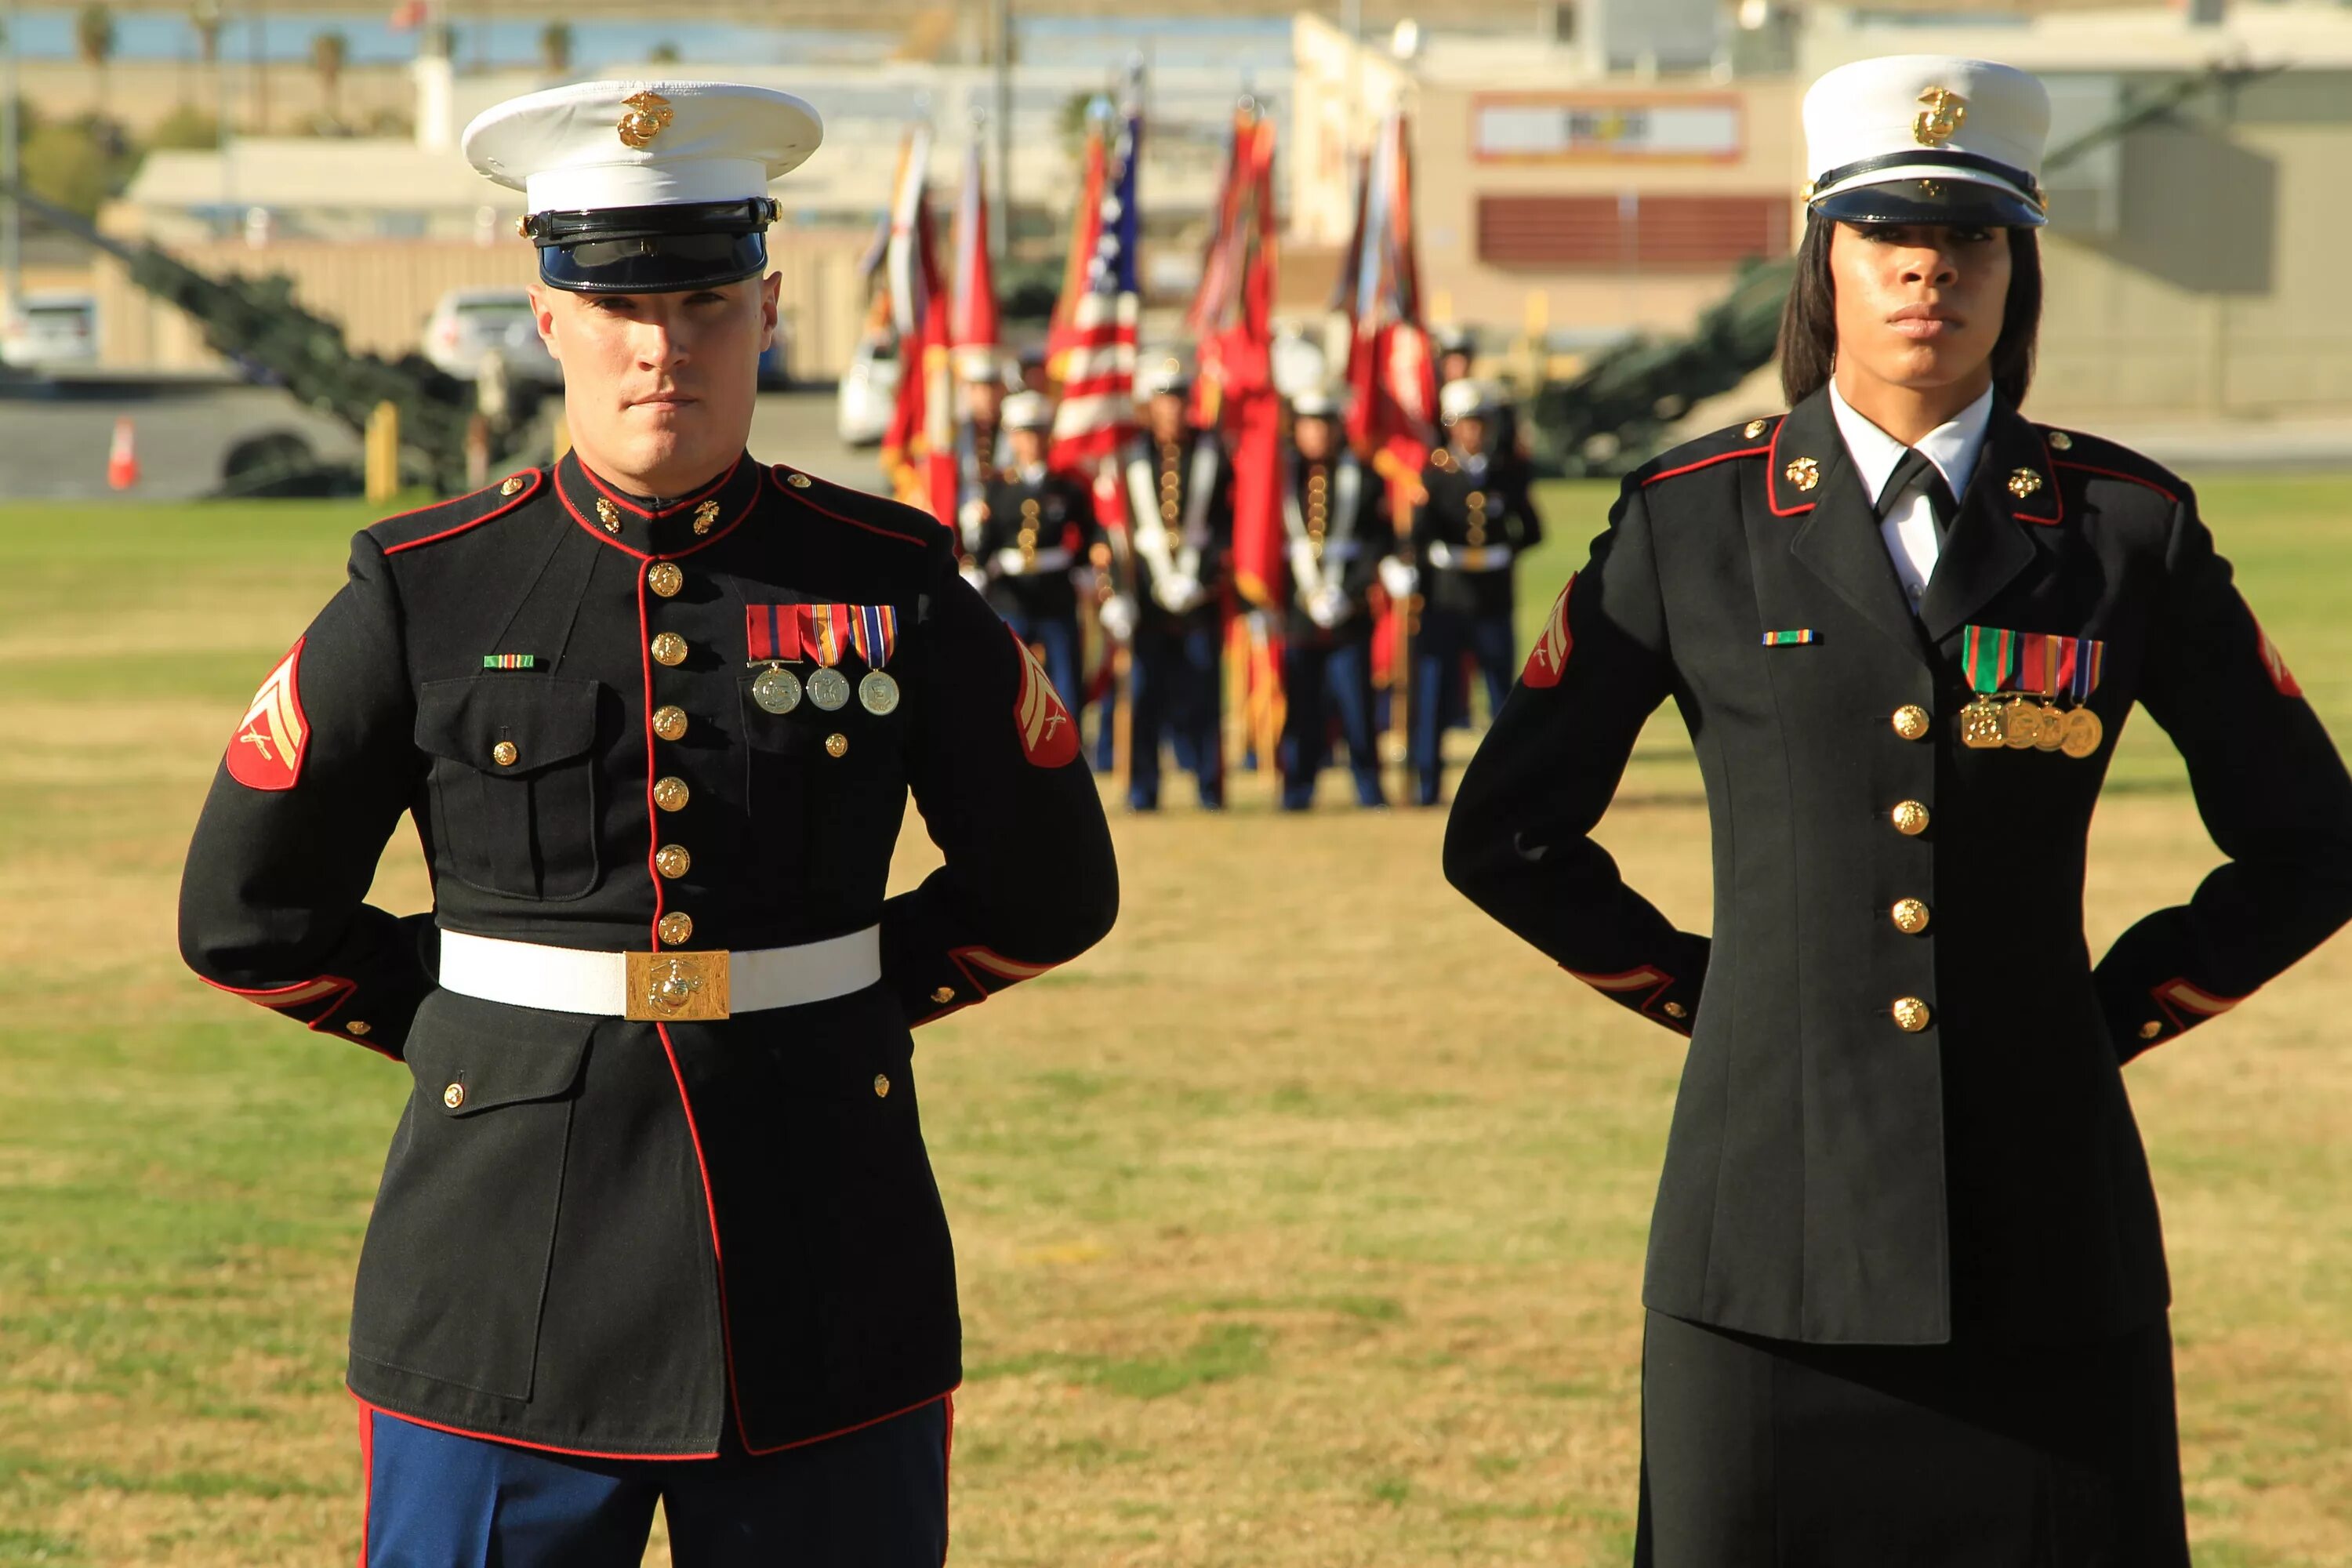 Лучшие качества офицера. Марине Корпс. USMC Marine Corps uniforms. Marine Corps США форма. Парадная форма Генерала армии США.